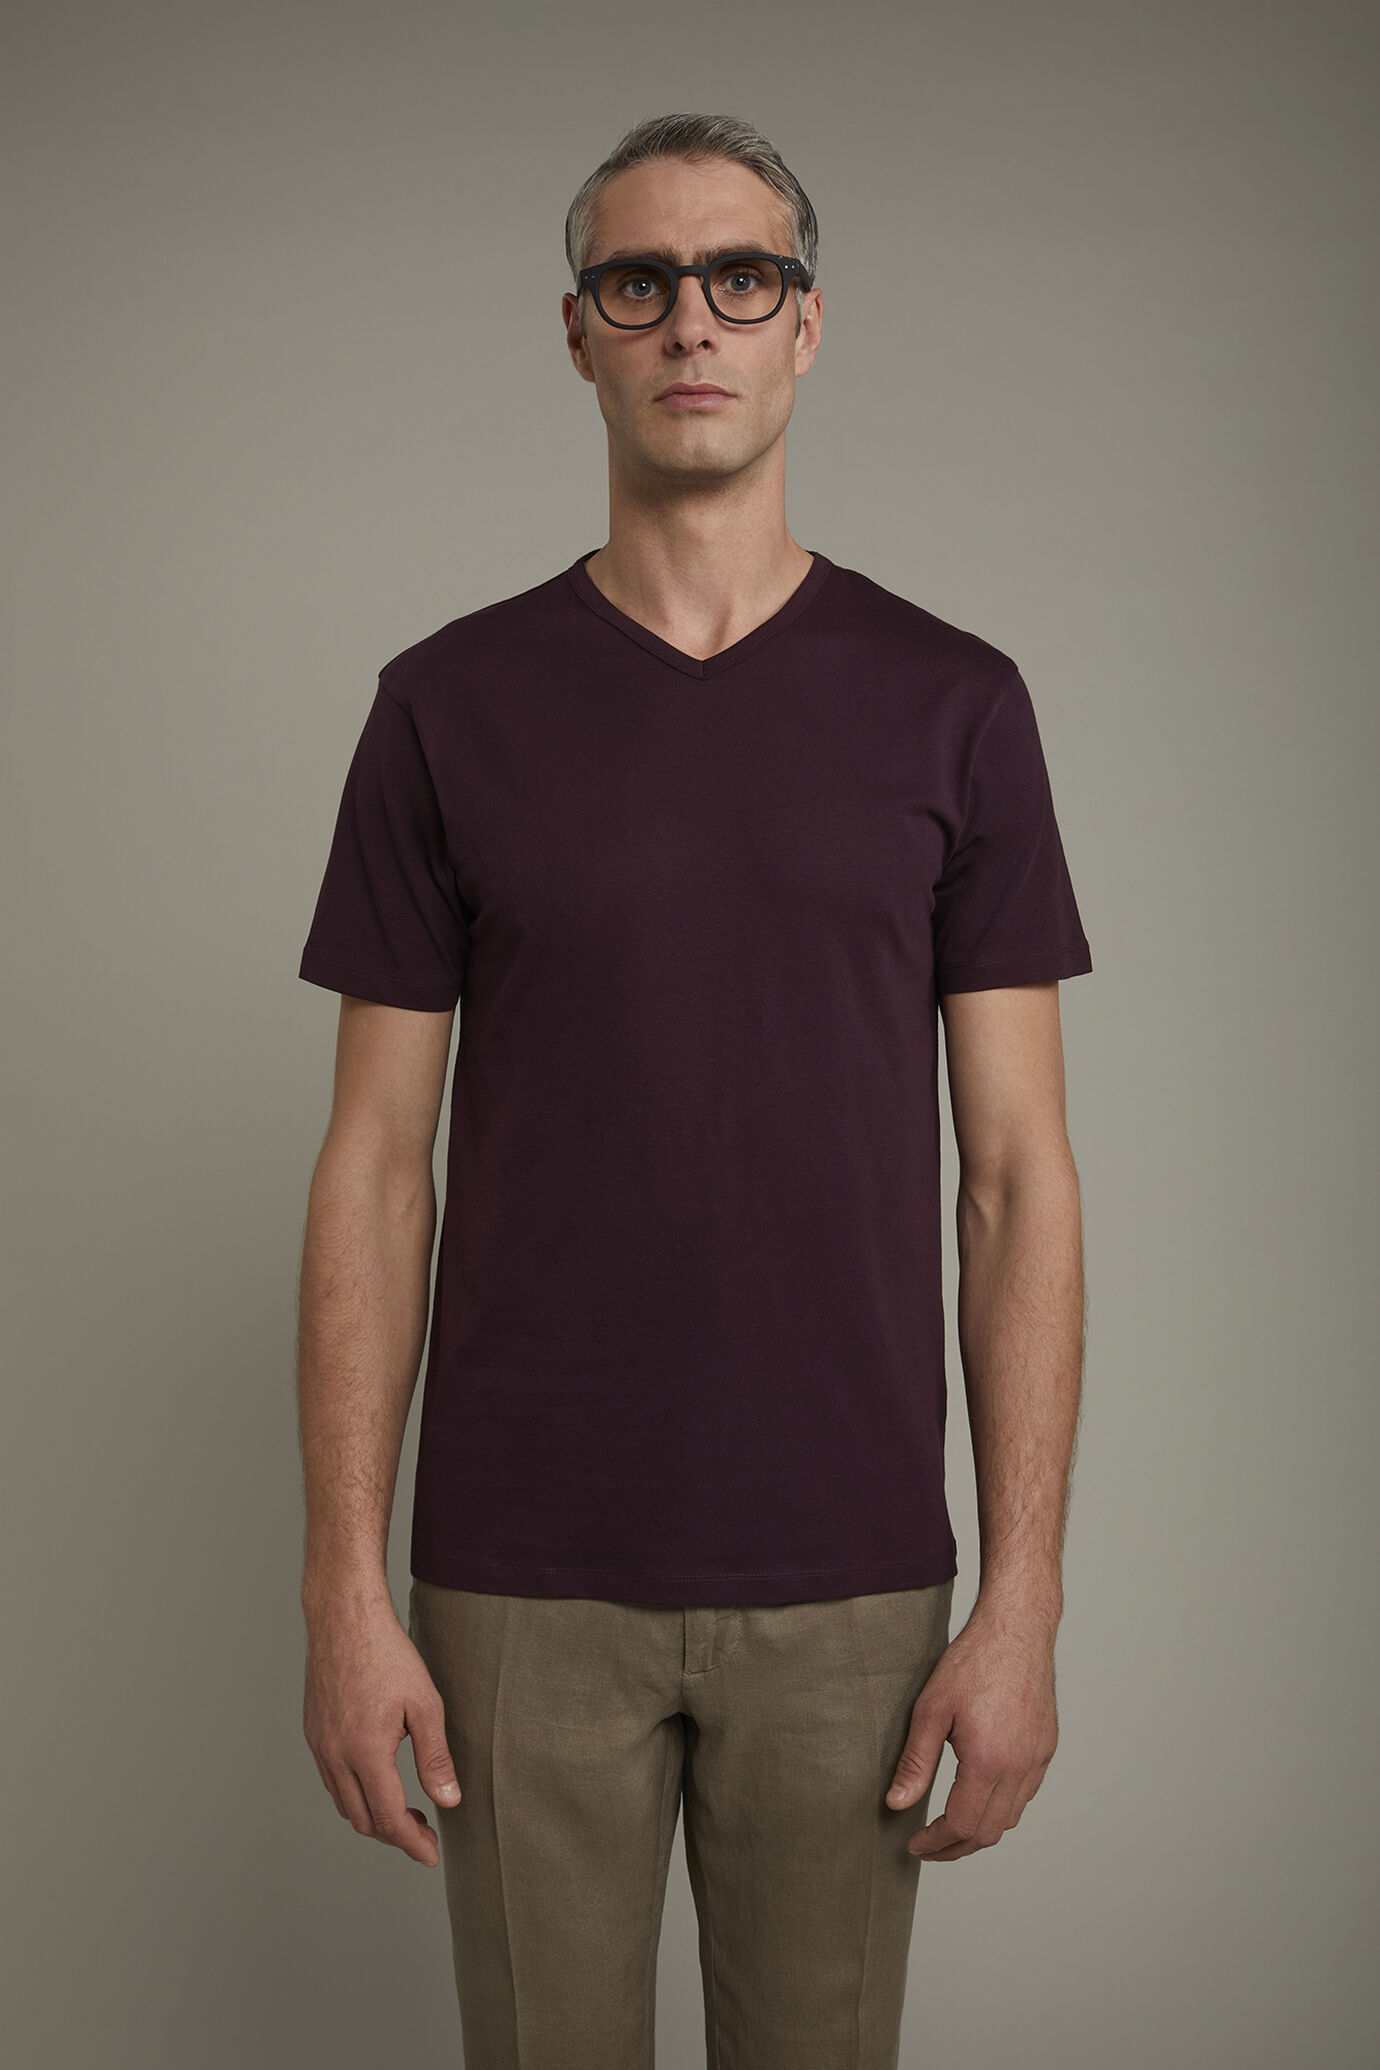 Herren-T-Shirt mit V-Ausschnitt aus 100 % Baumwolljersey in normaler Passform